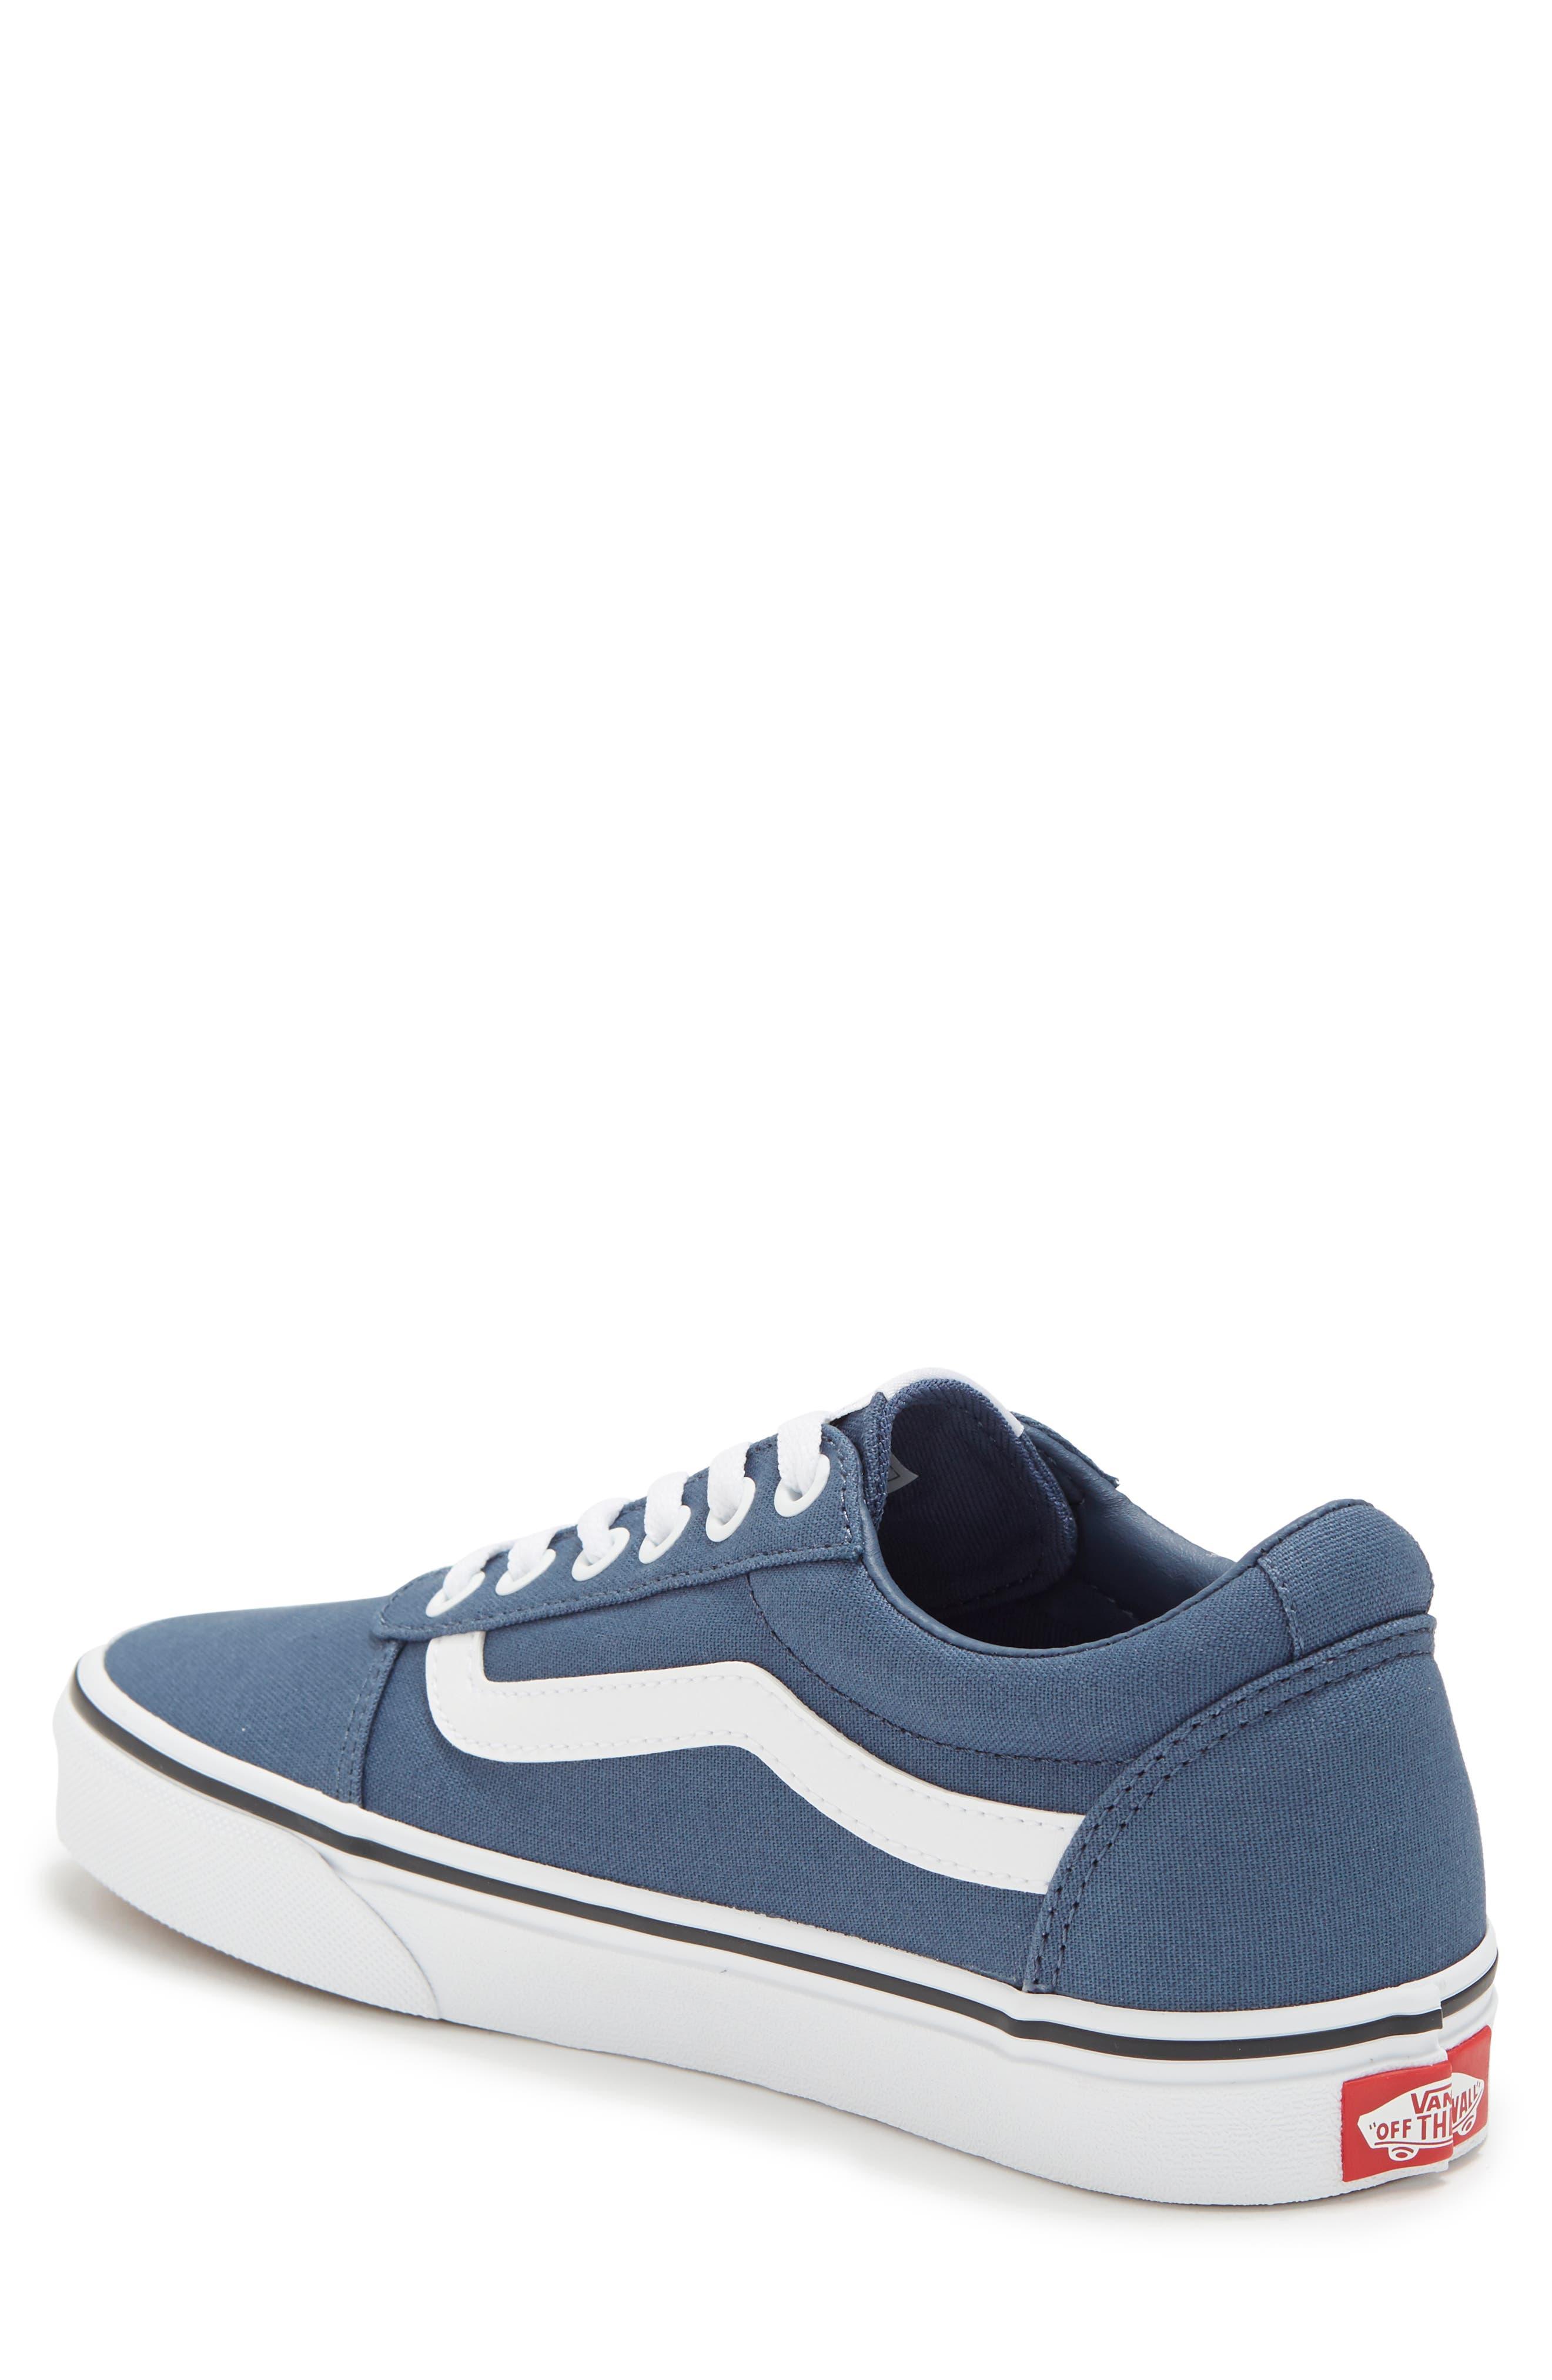 Ward Blue Sneaker Vans | Lyst in